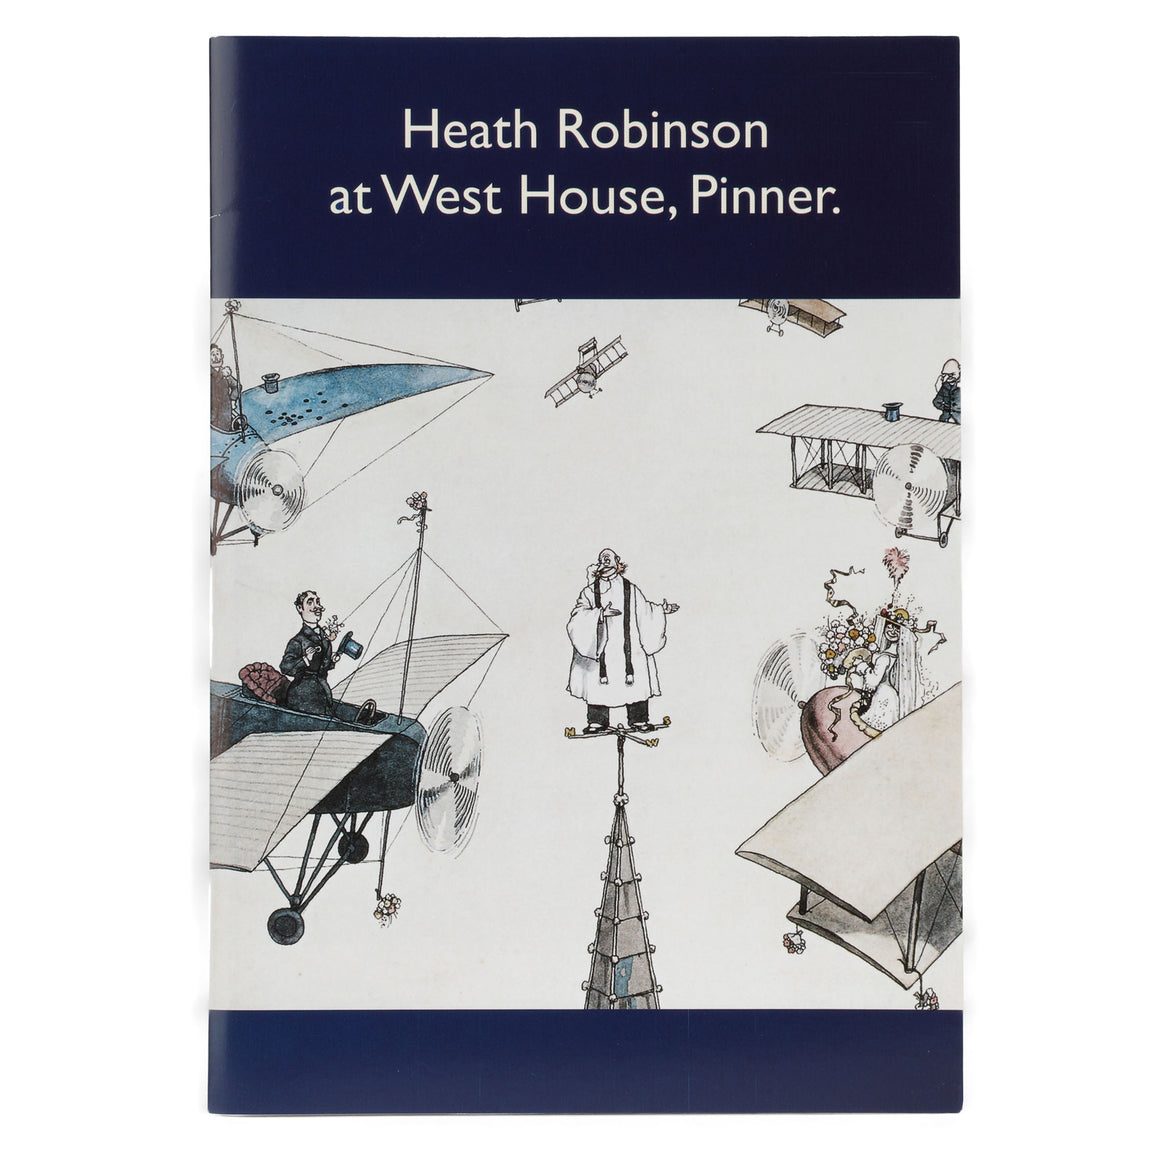 Heath Robinson at West House